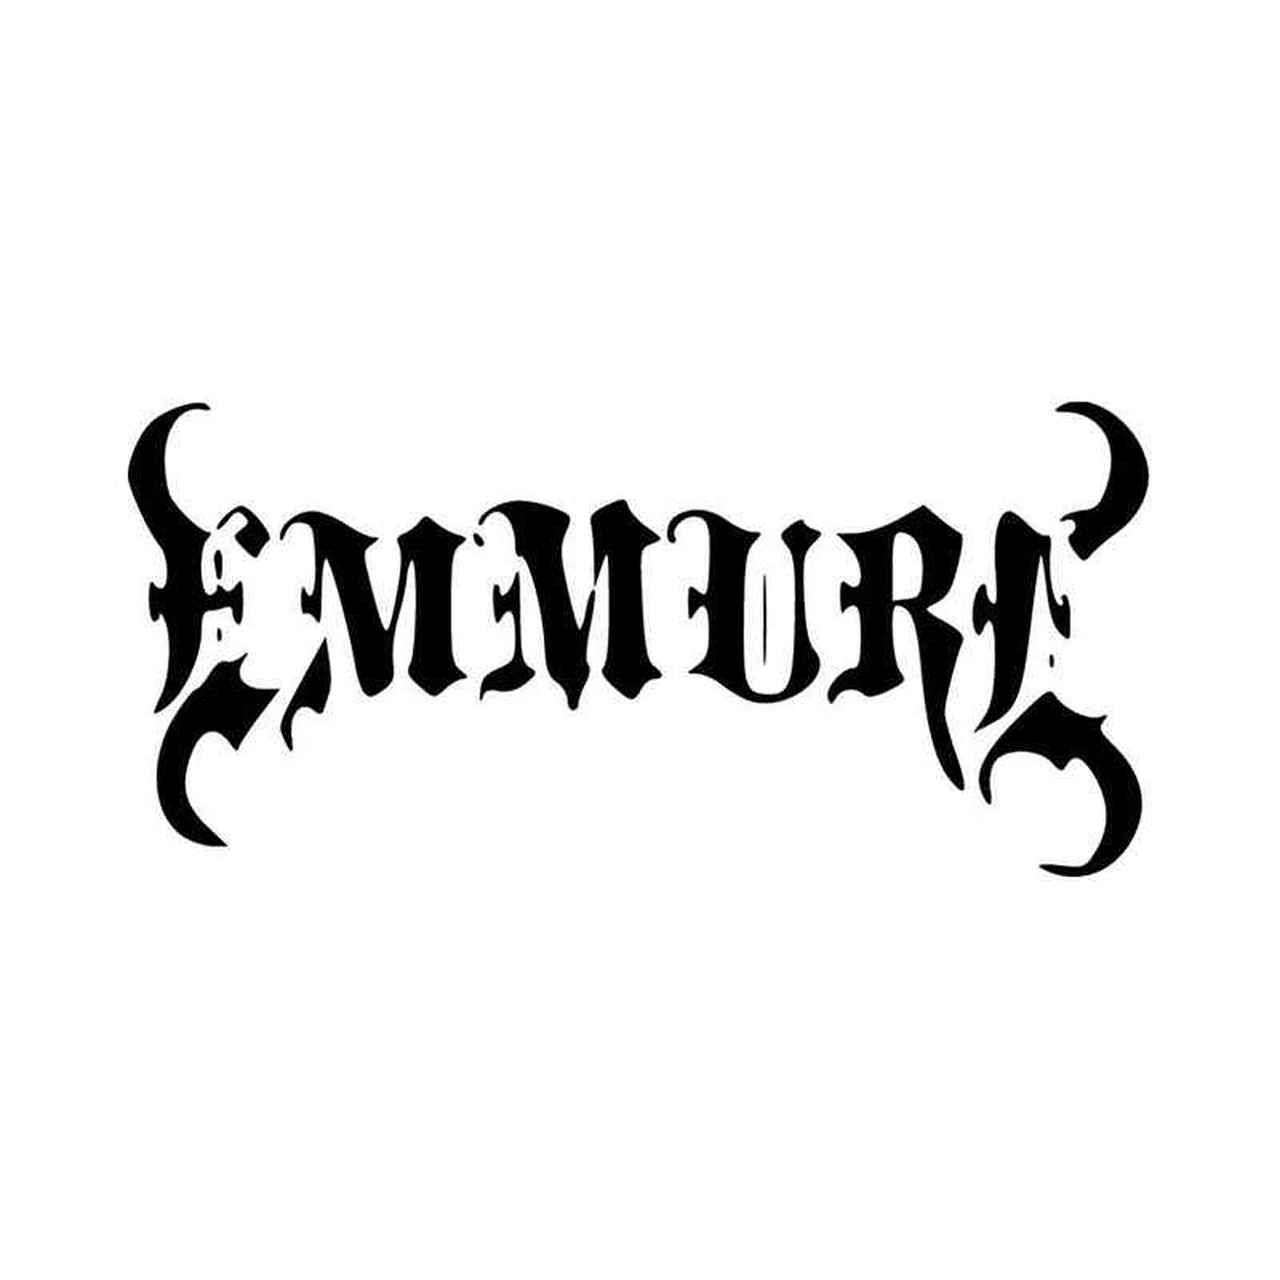 Emmure Logo - Emmure Band Logo Vinyl Decal Sticker